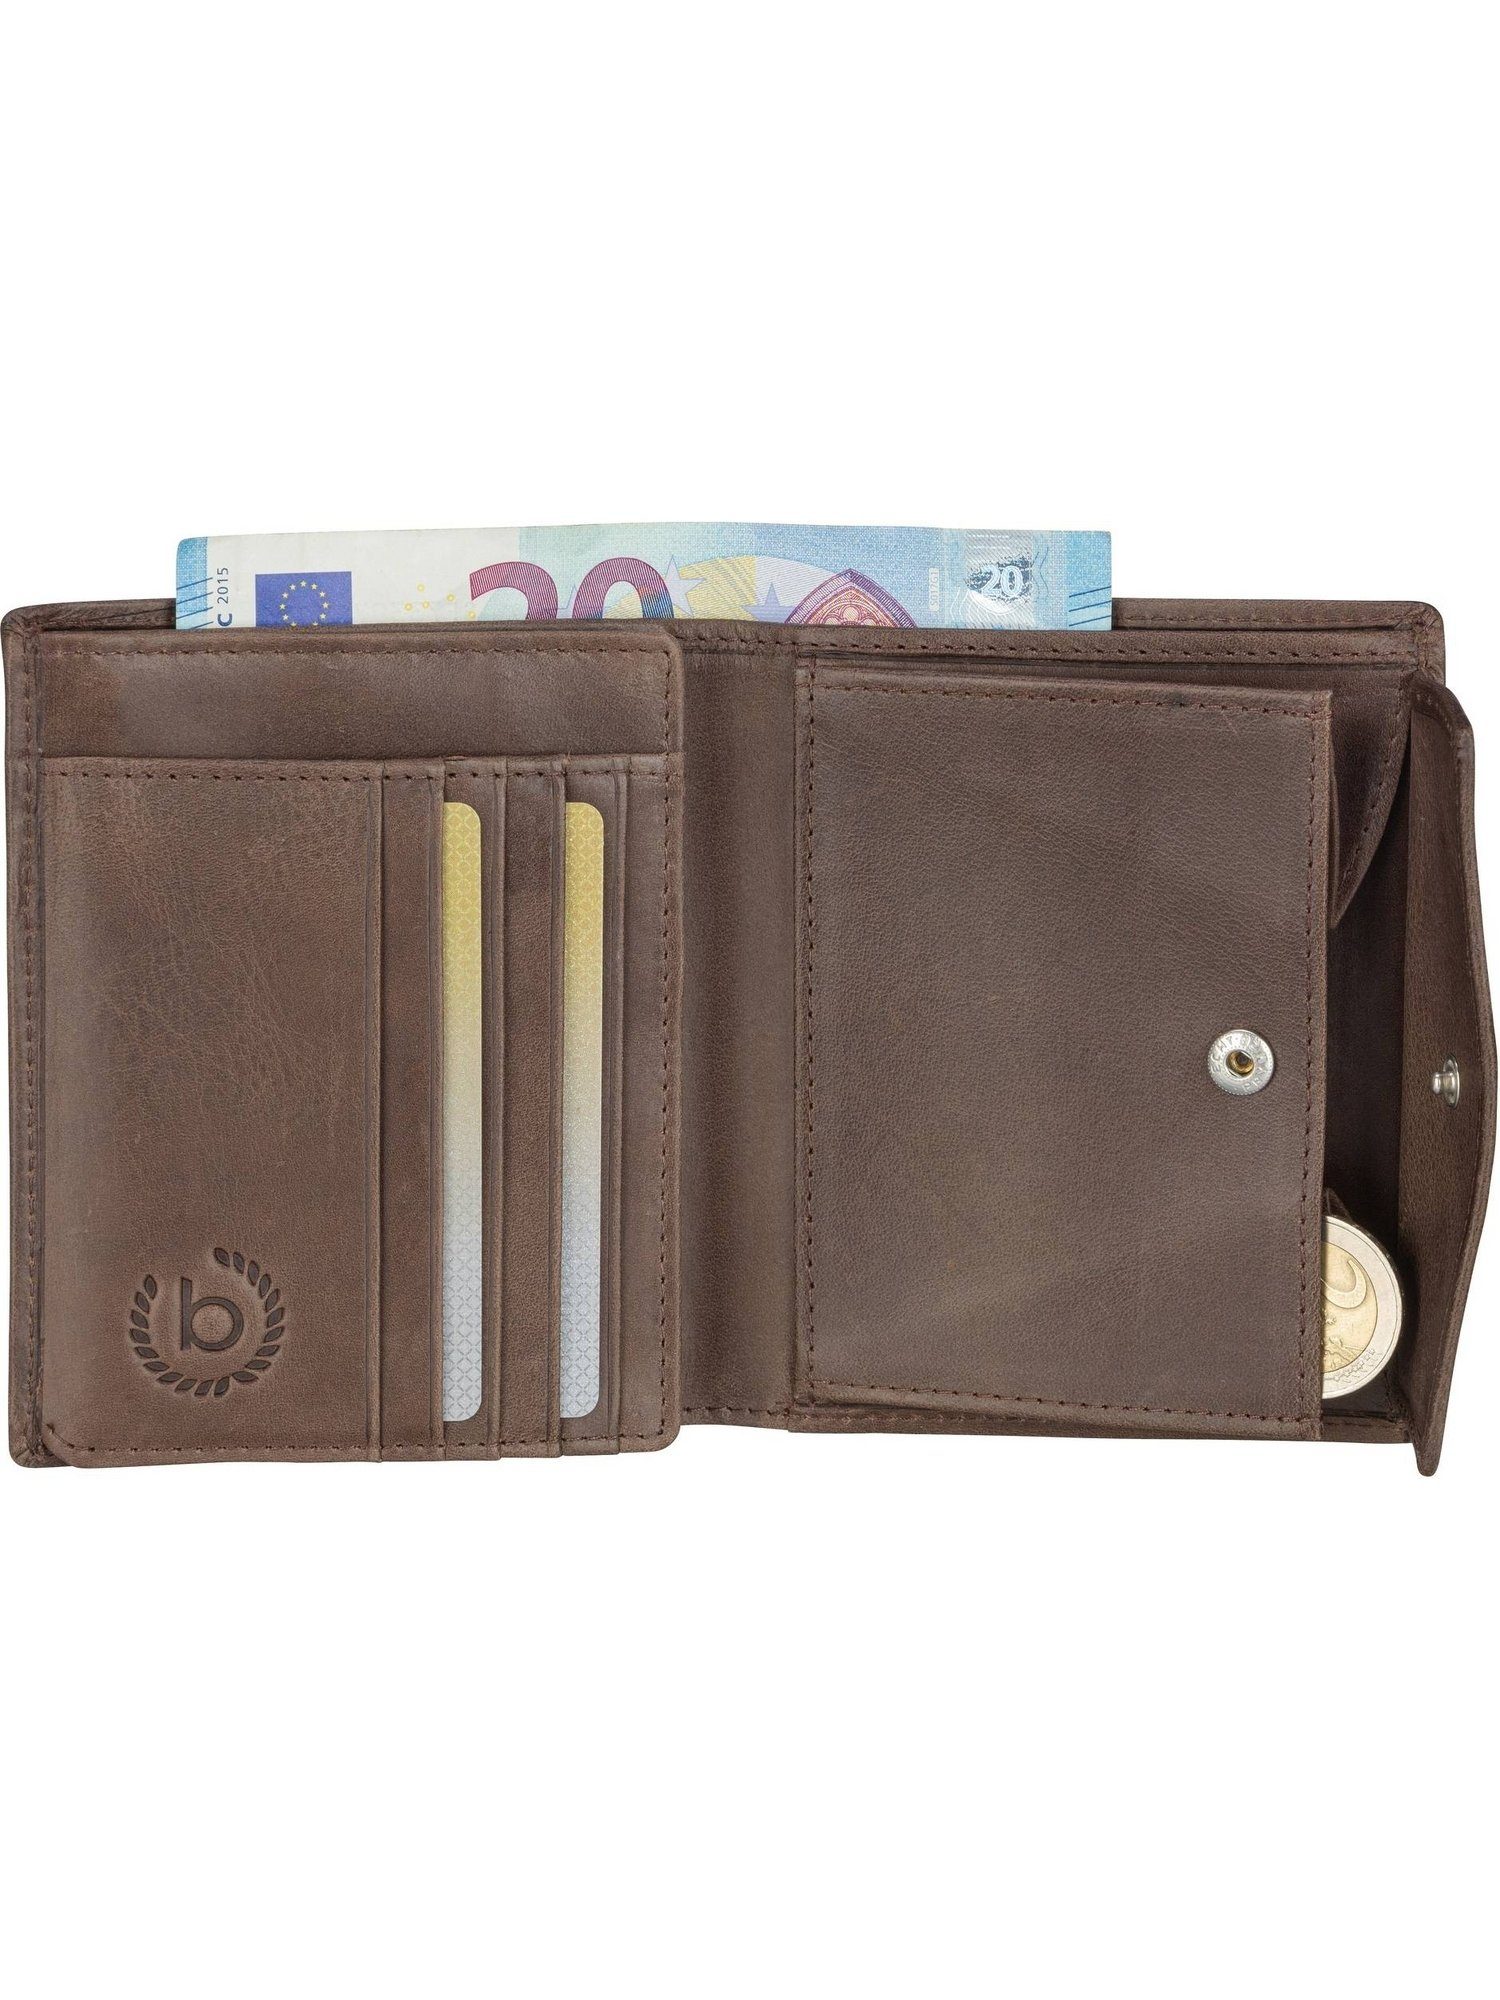 bugatti Geldbörse 2183 Volo Braun Wallet